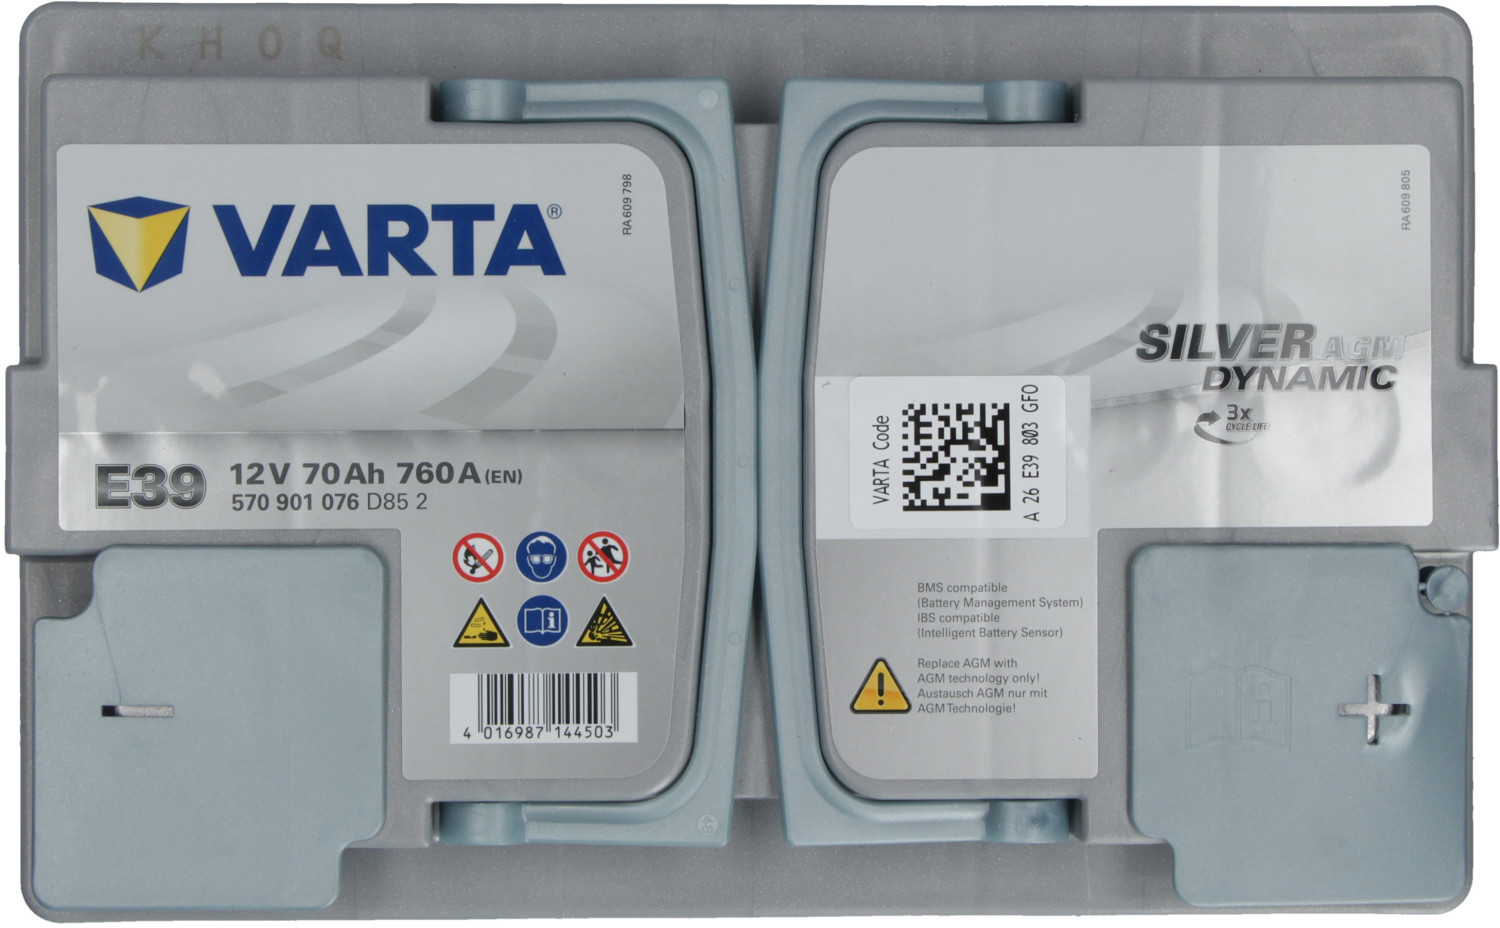 Batteria Auto AGM Varta F21 - Accessori Auto In vendita a Torino